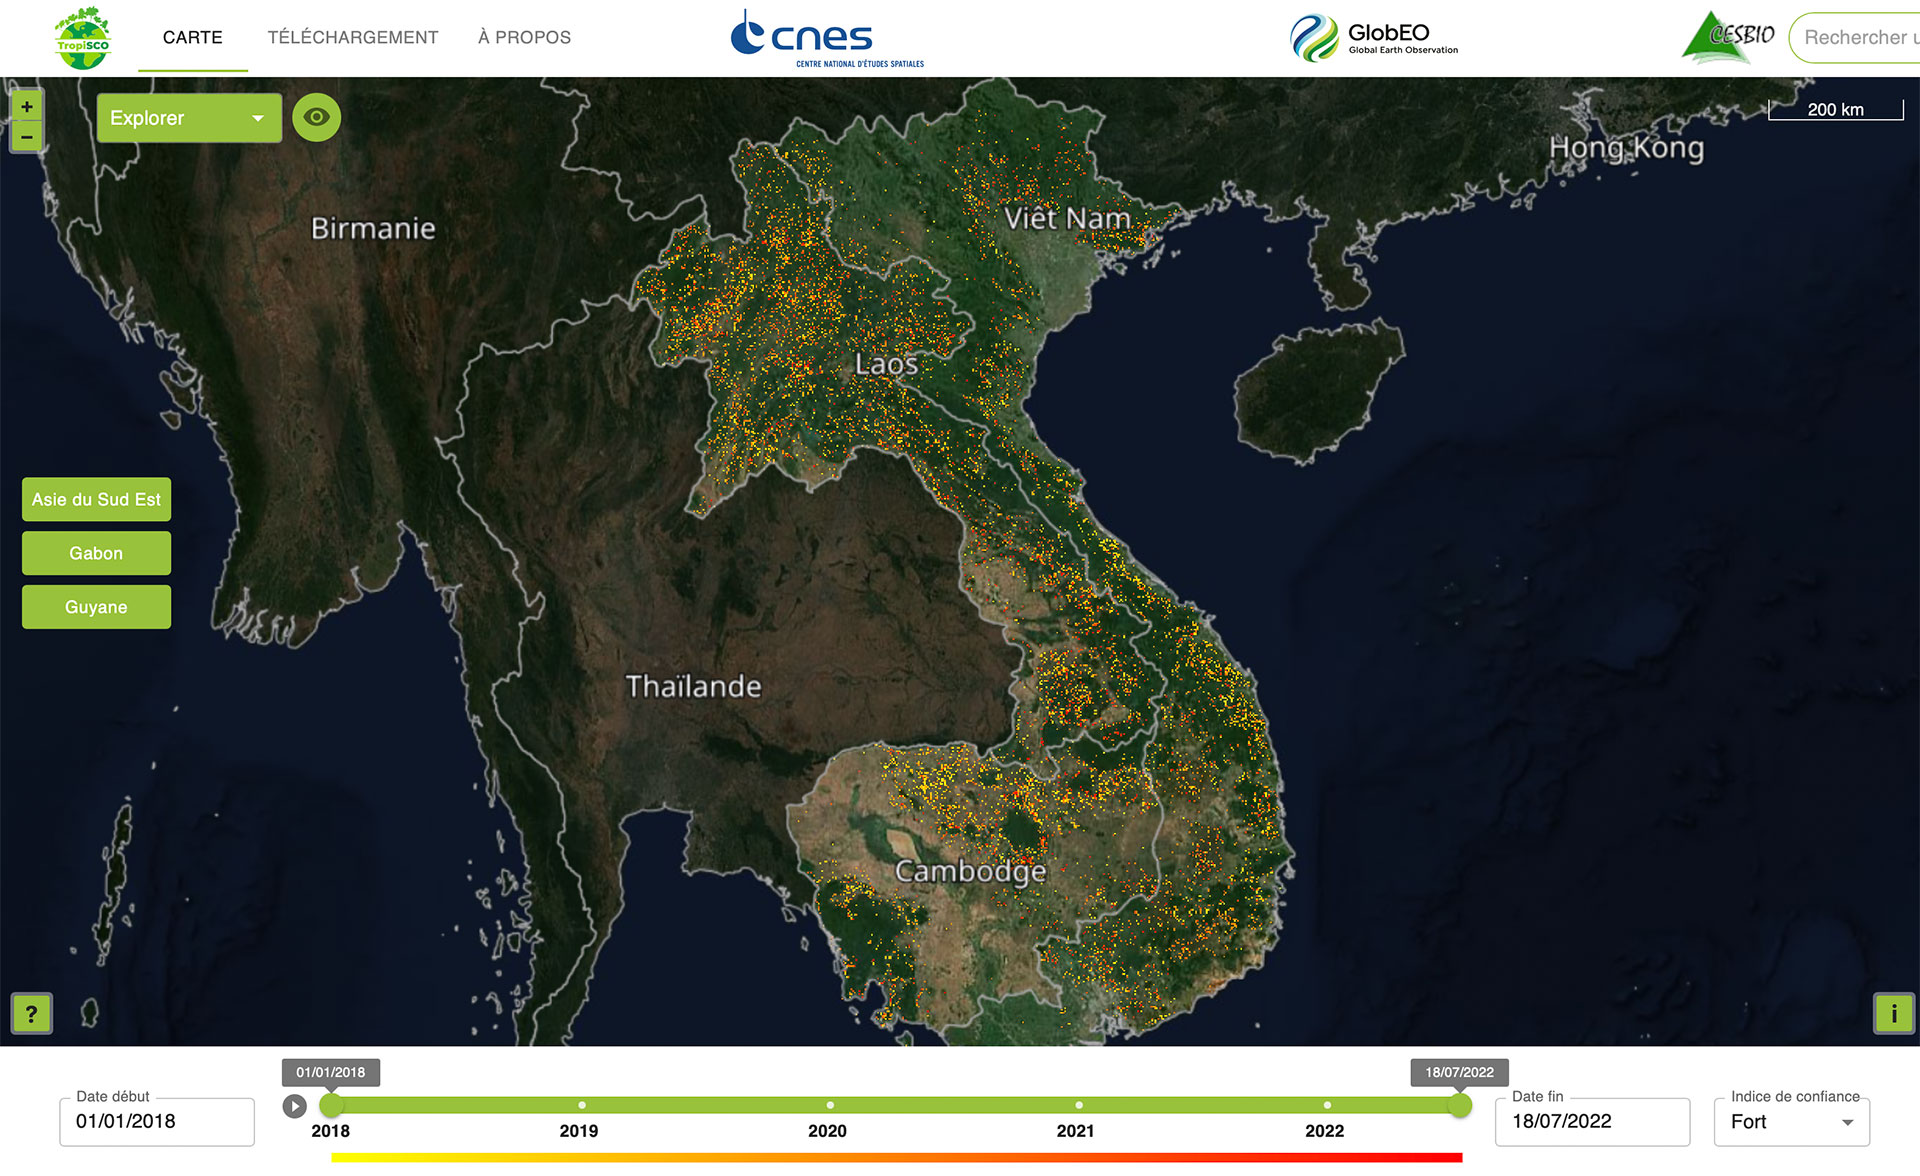 Sur les sept sites où se développe le projet, l’Asie du Sud-est montre la plus forte perte de forêt depuis 2018. 